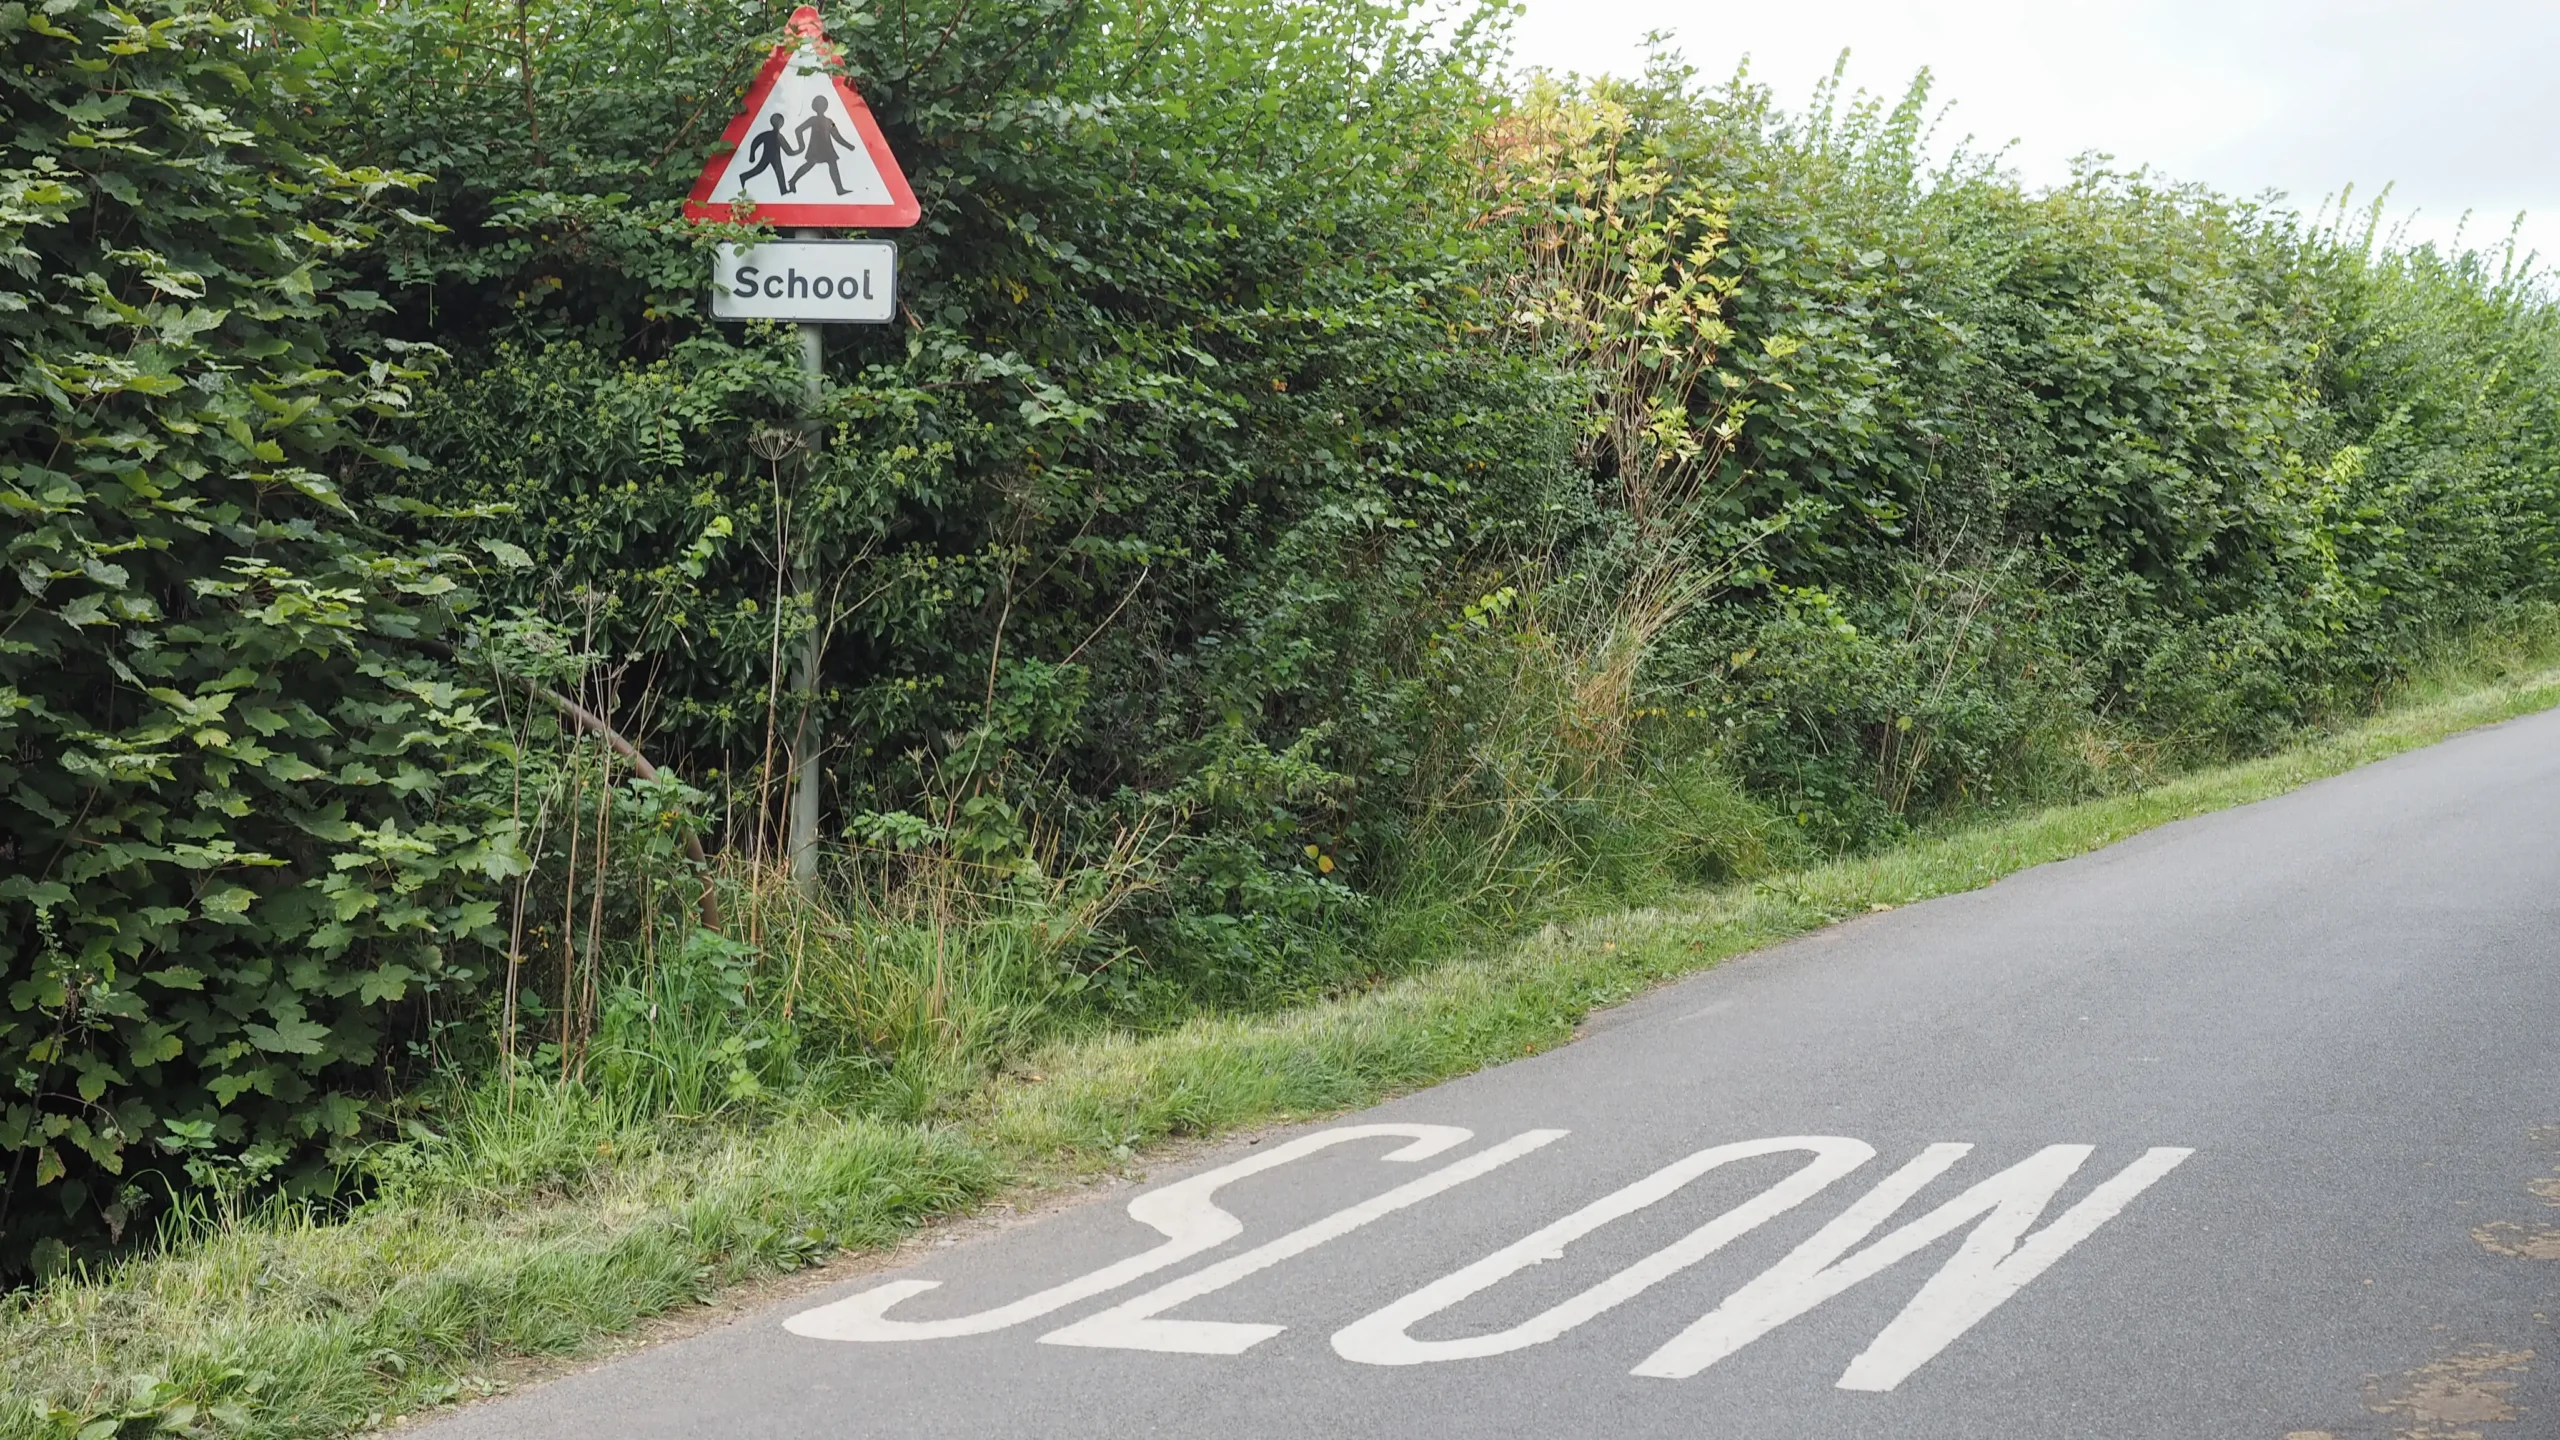 Una carretera té escrita al terra la paraula 'SLOW' ('lent' en anglès). Al costat de la inscripció hi ha una senyal que alerta del perill per entrar en zona escolar. Sota la senyal, una altra senyal té la paraula 'School' ('escola' en anglès).